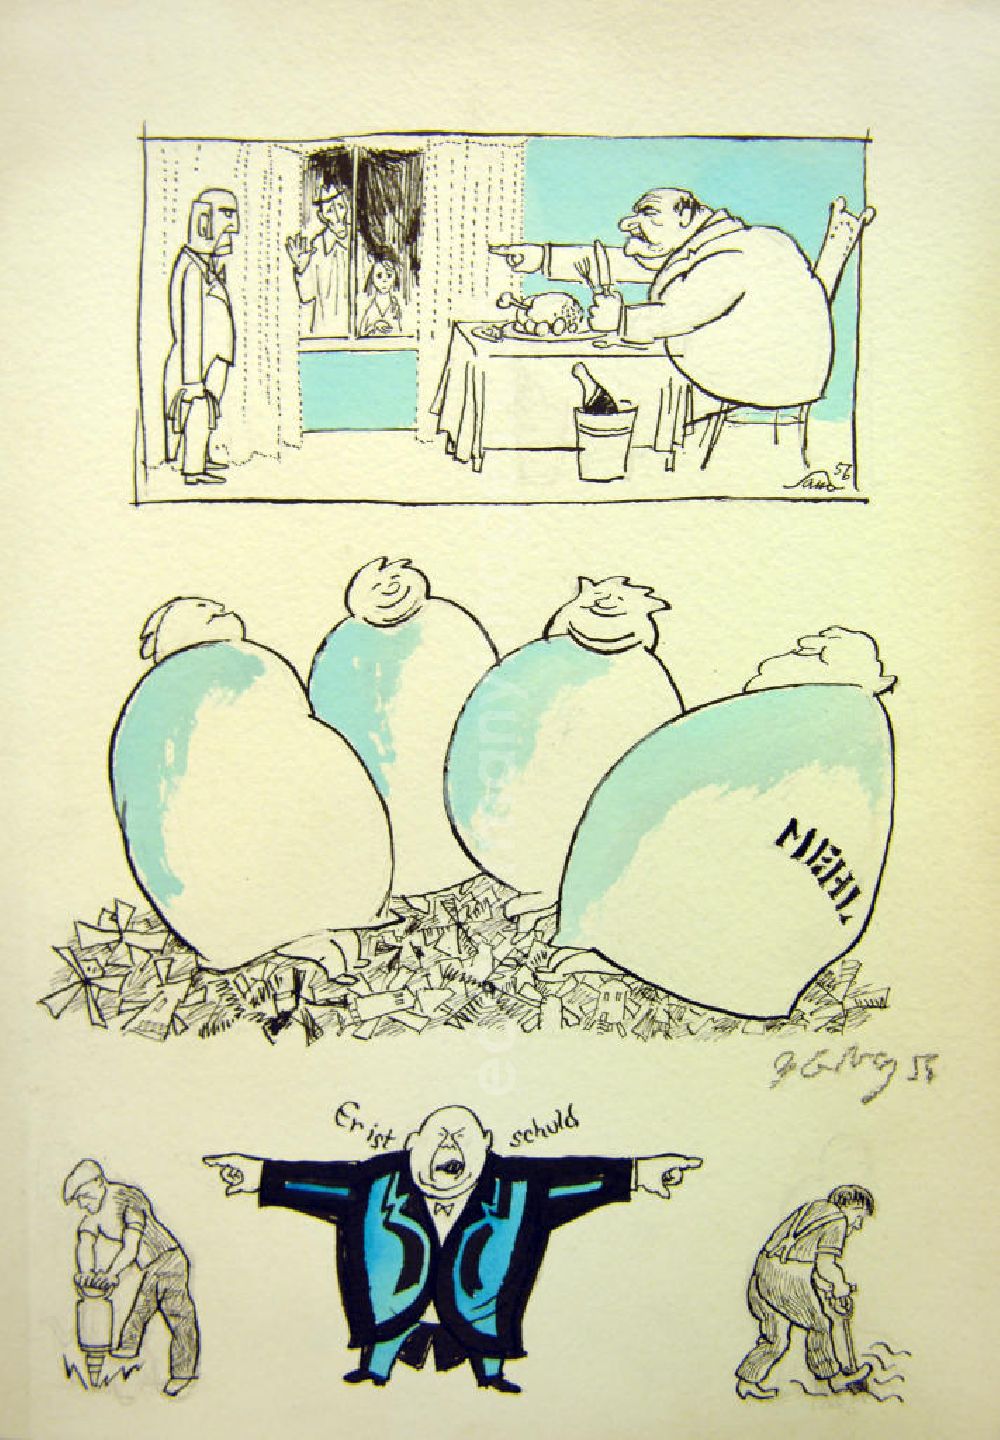 GDR image archive: Berlin - Zeichnung von Herbert Sandberg Er ist schuld aus dem Jahr 1956, 20,0x29,